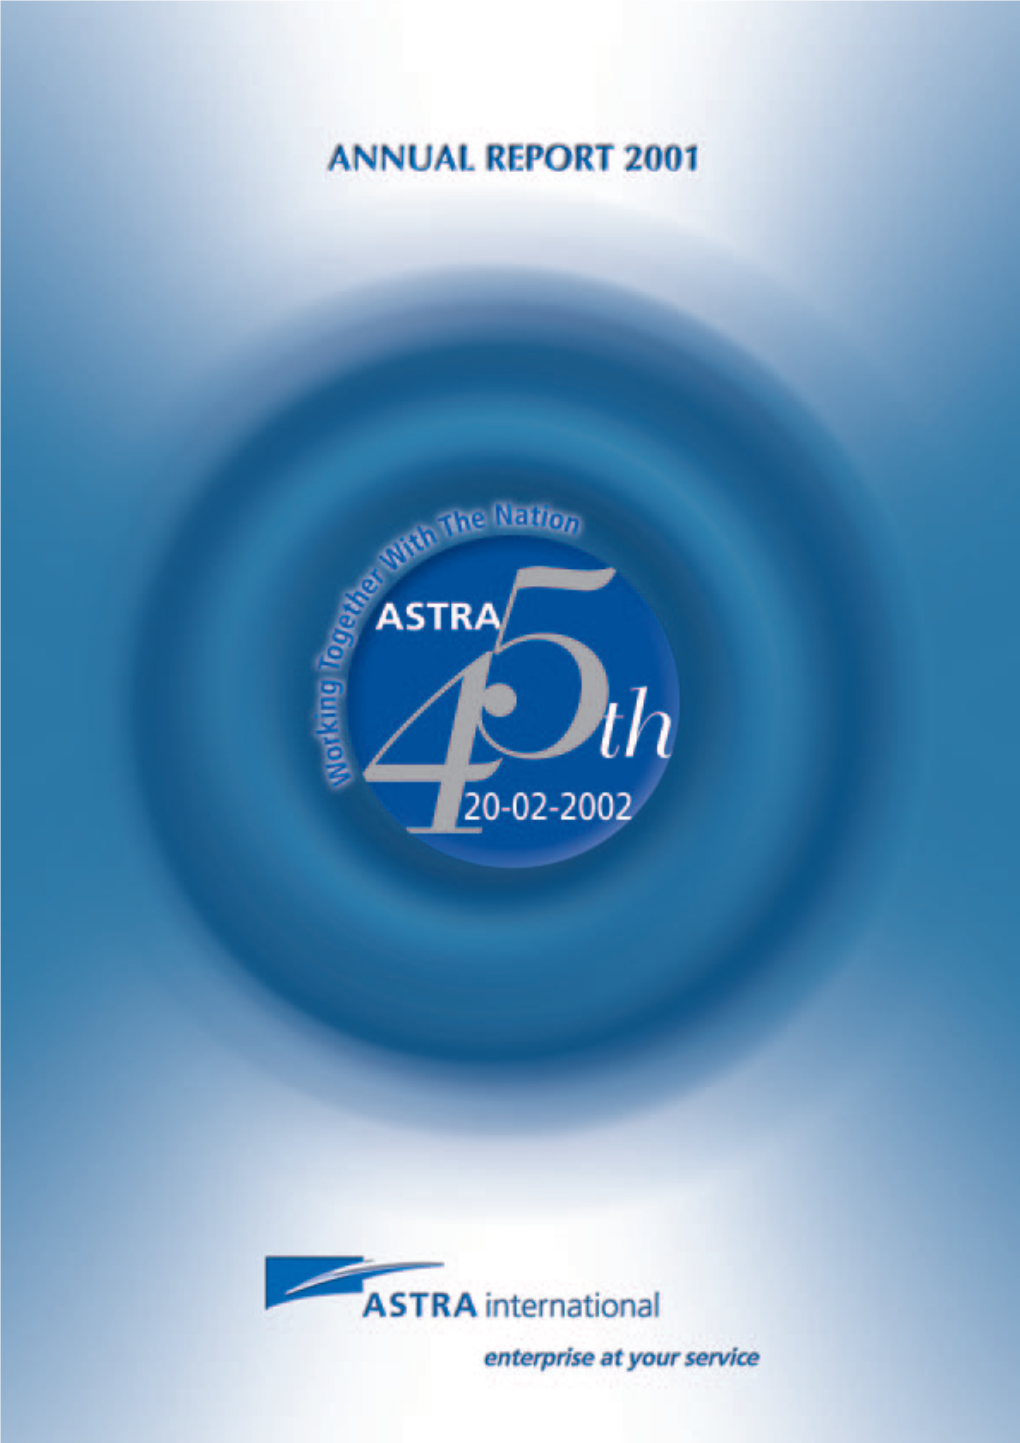 Annual Report Astra 2001.Pdf